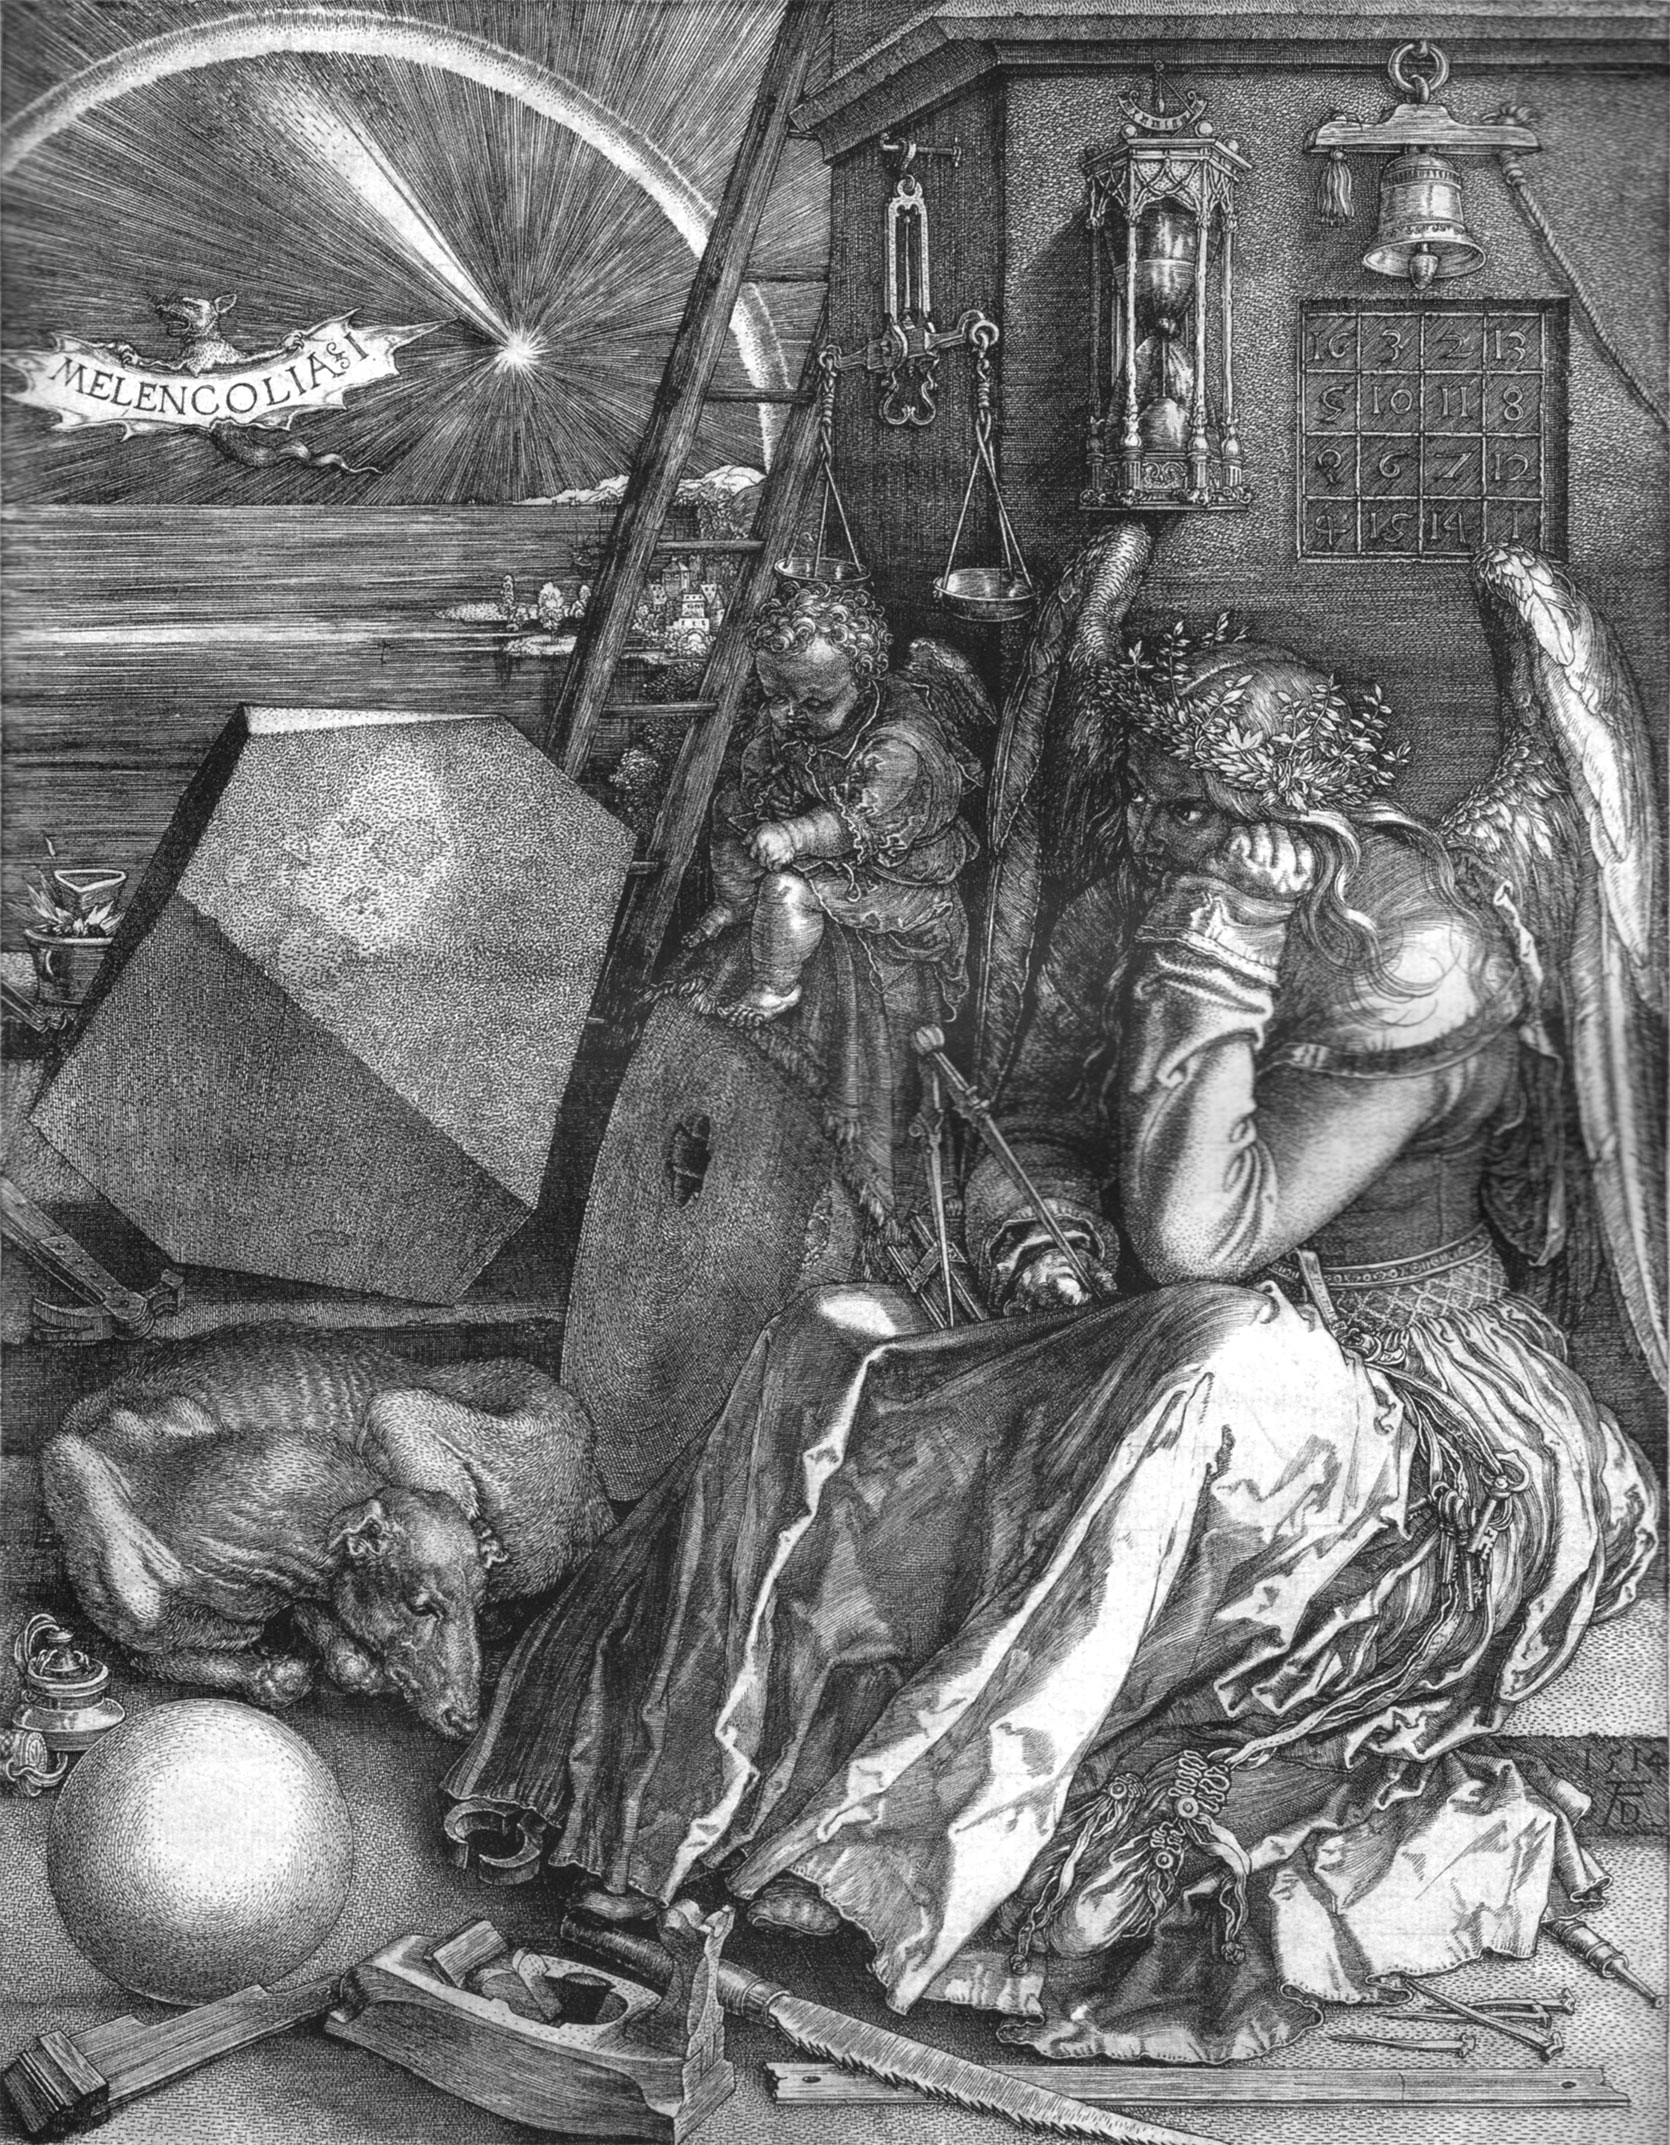 Меленколия I by Альбрехт Дюрер - 1514 - 24 × 18,8 см 